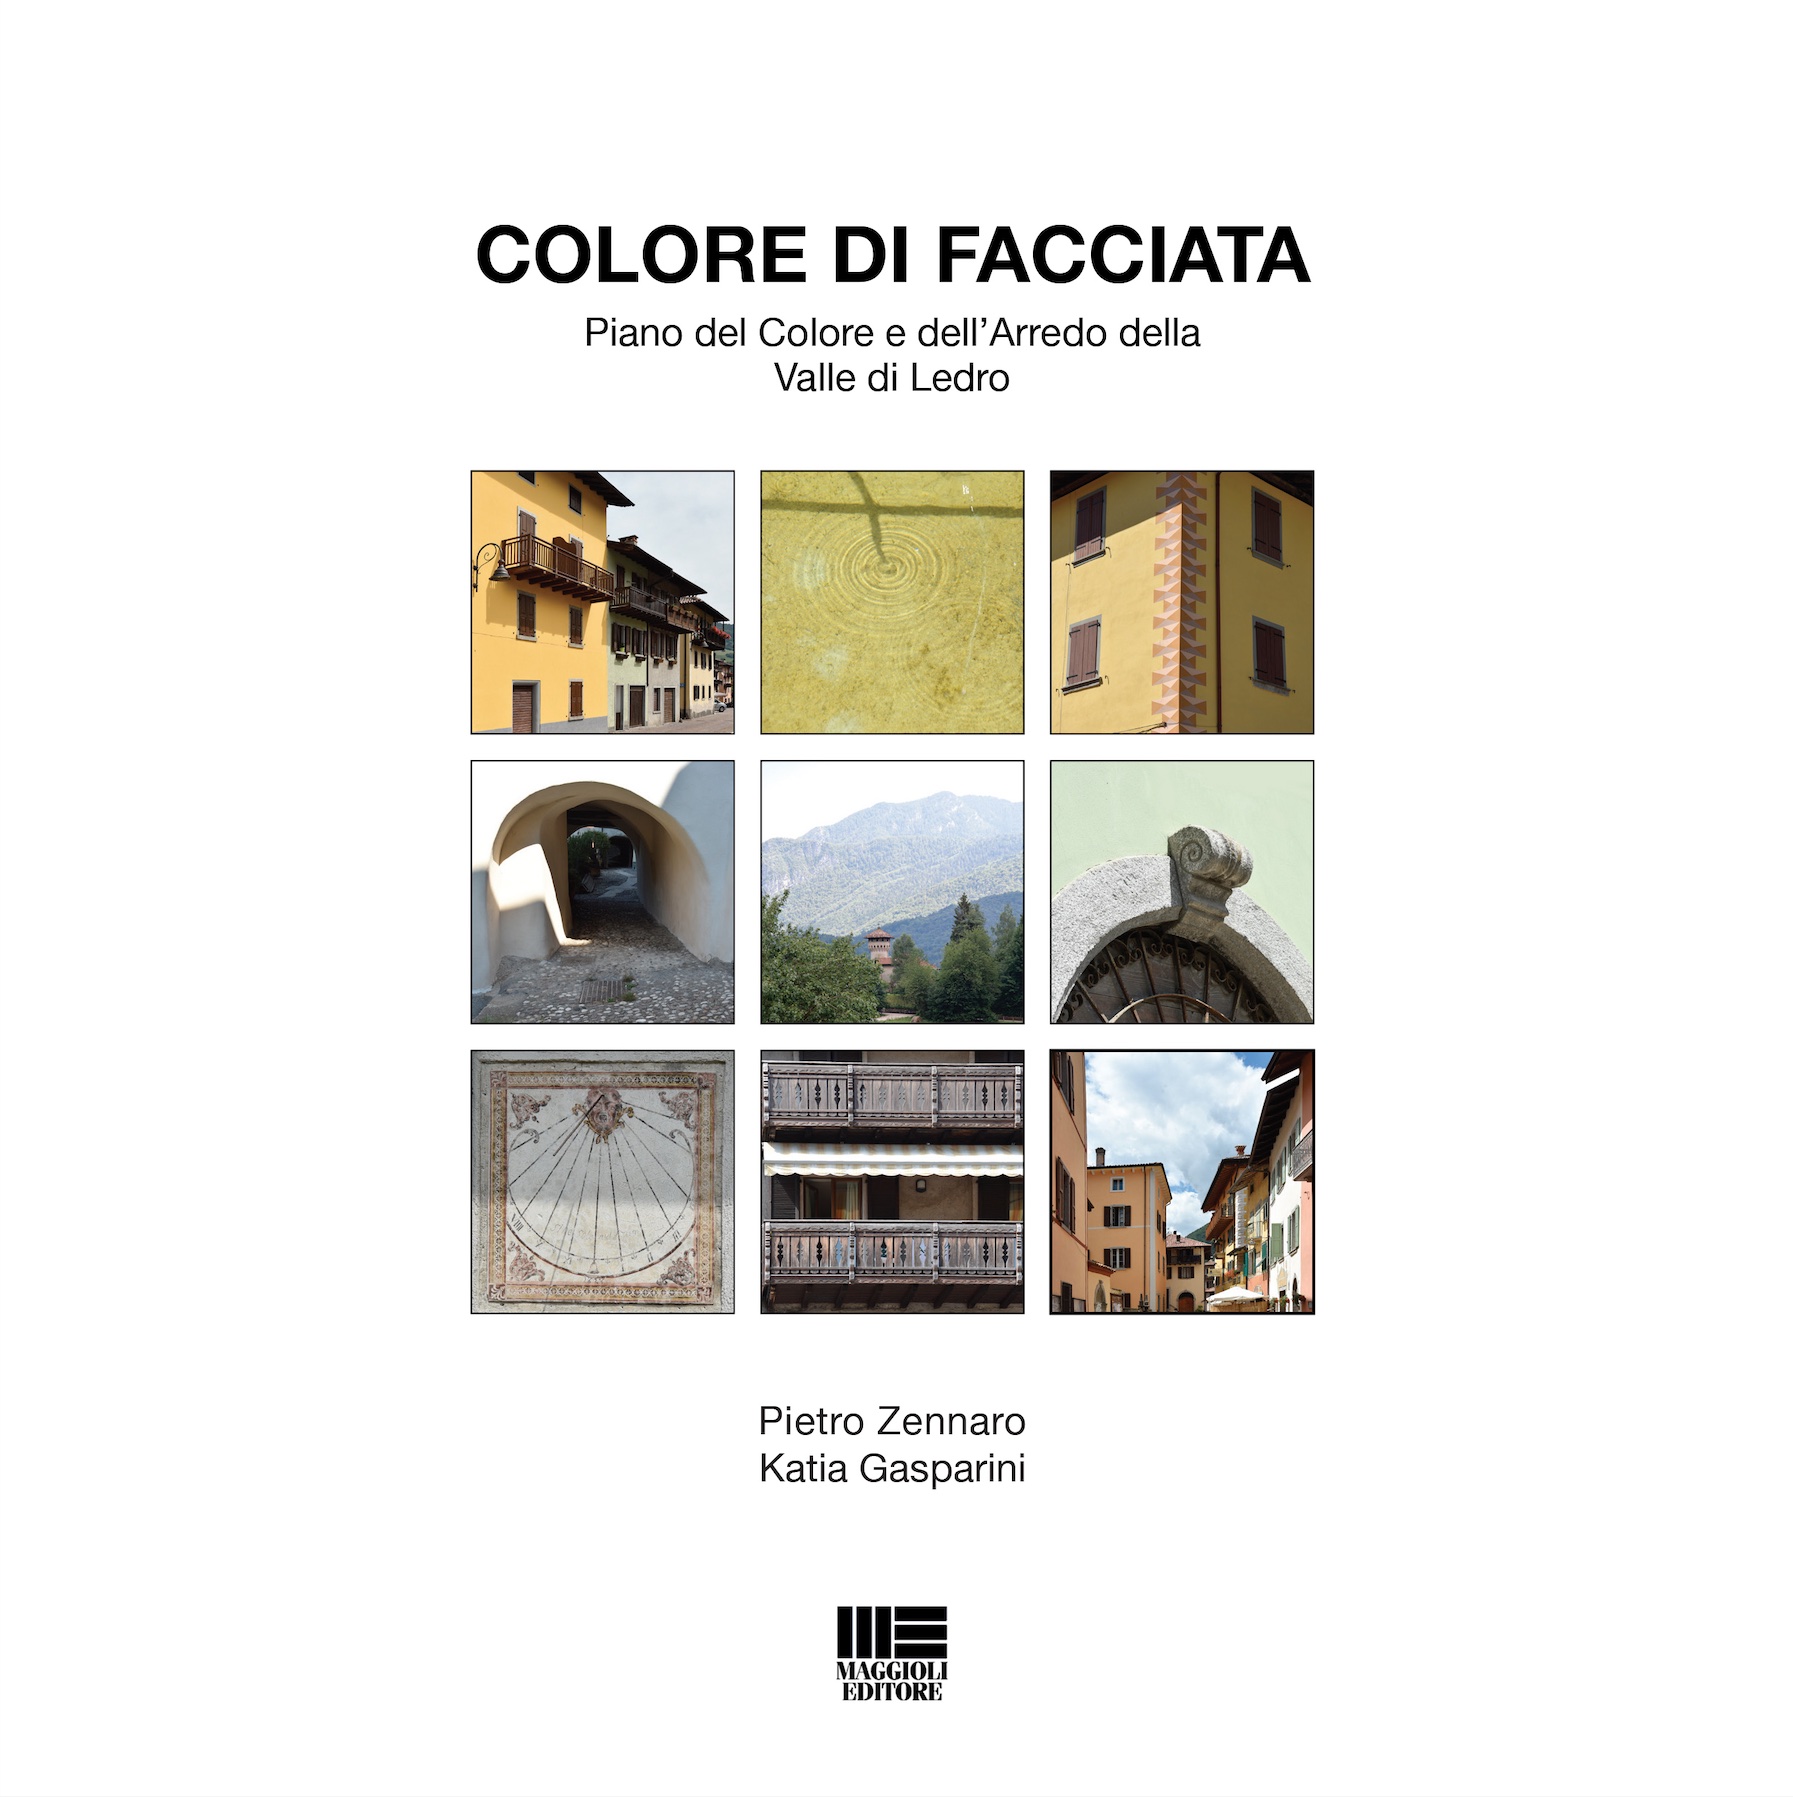 Colore di facciata by Pietro Zennaro and Katia Gasparini